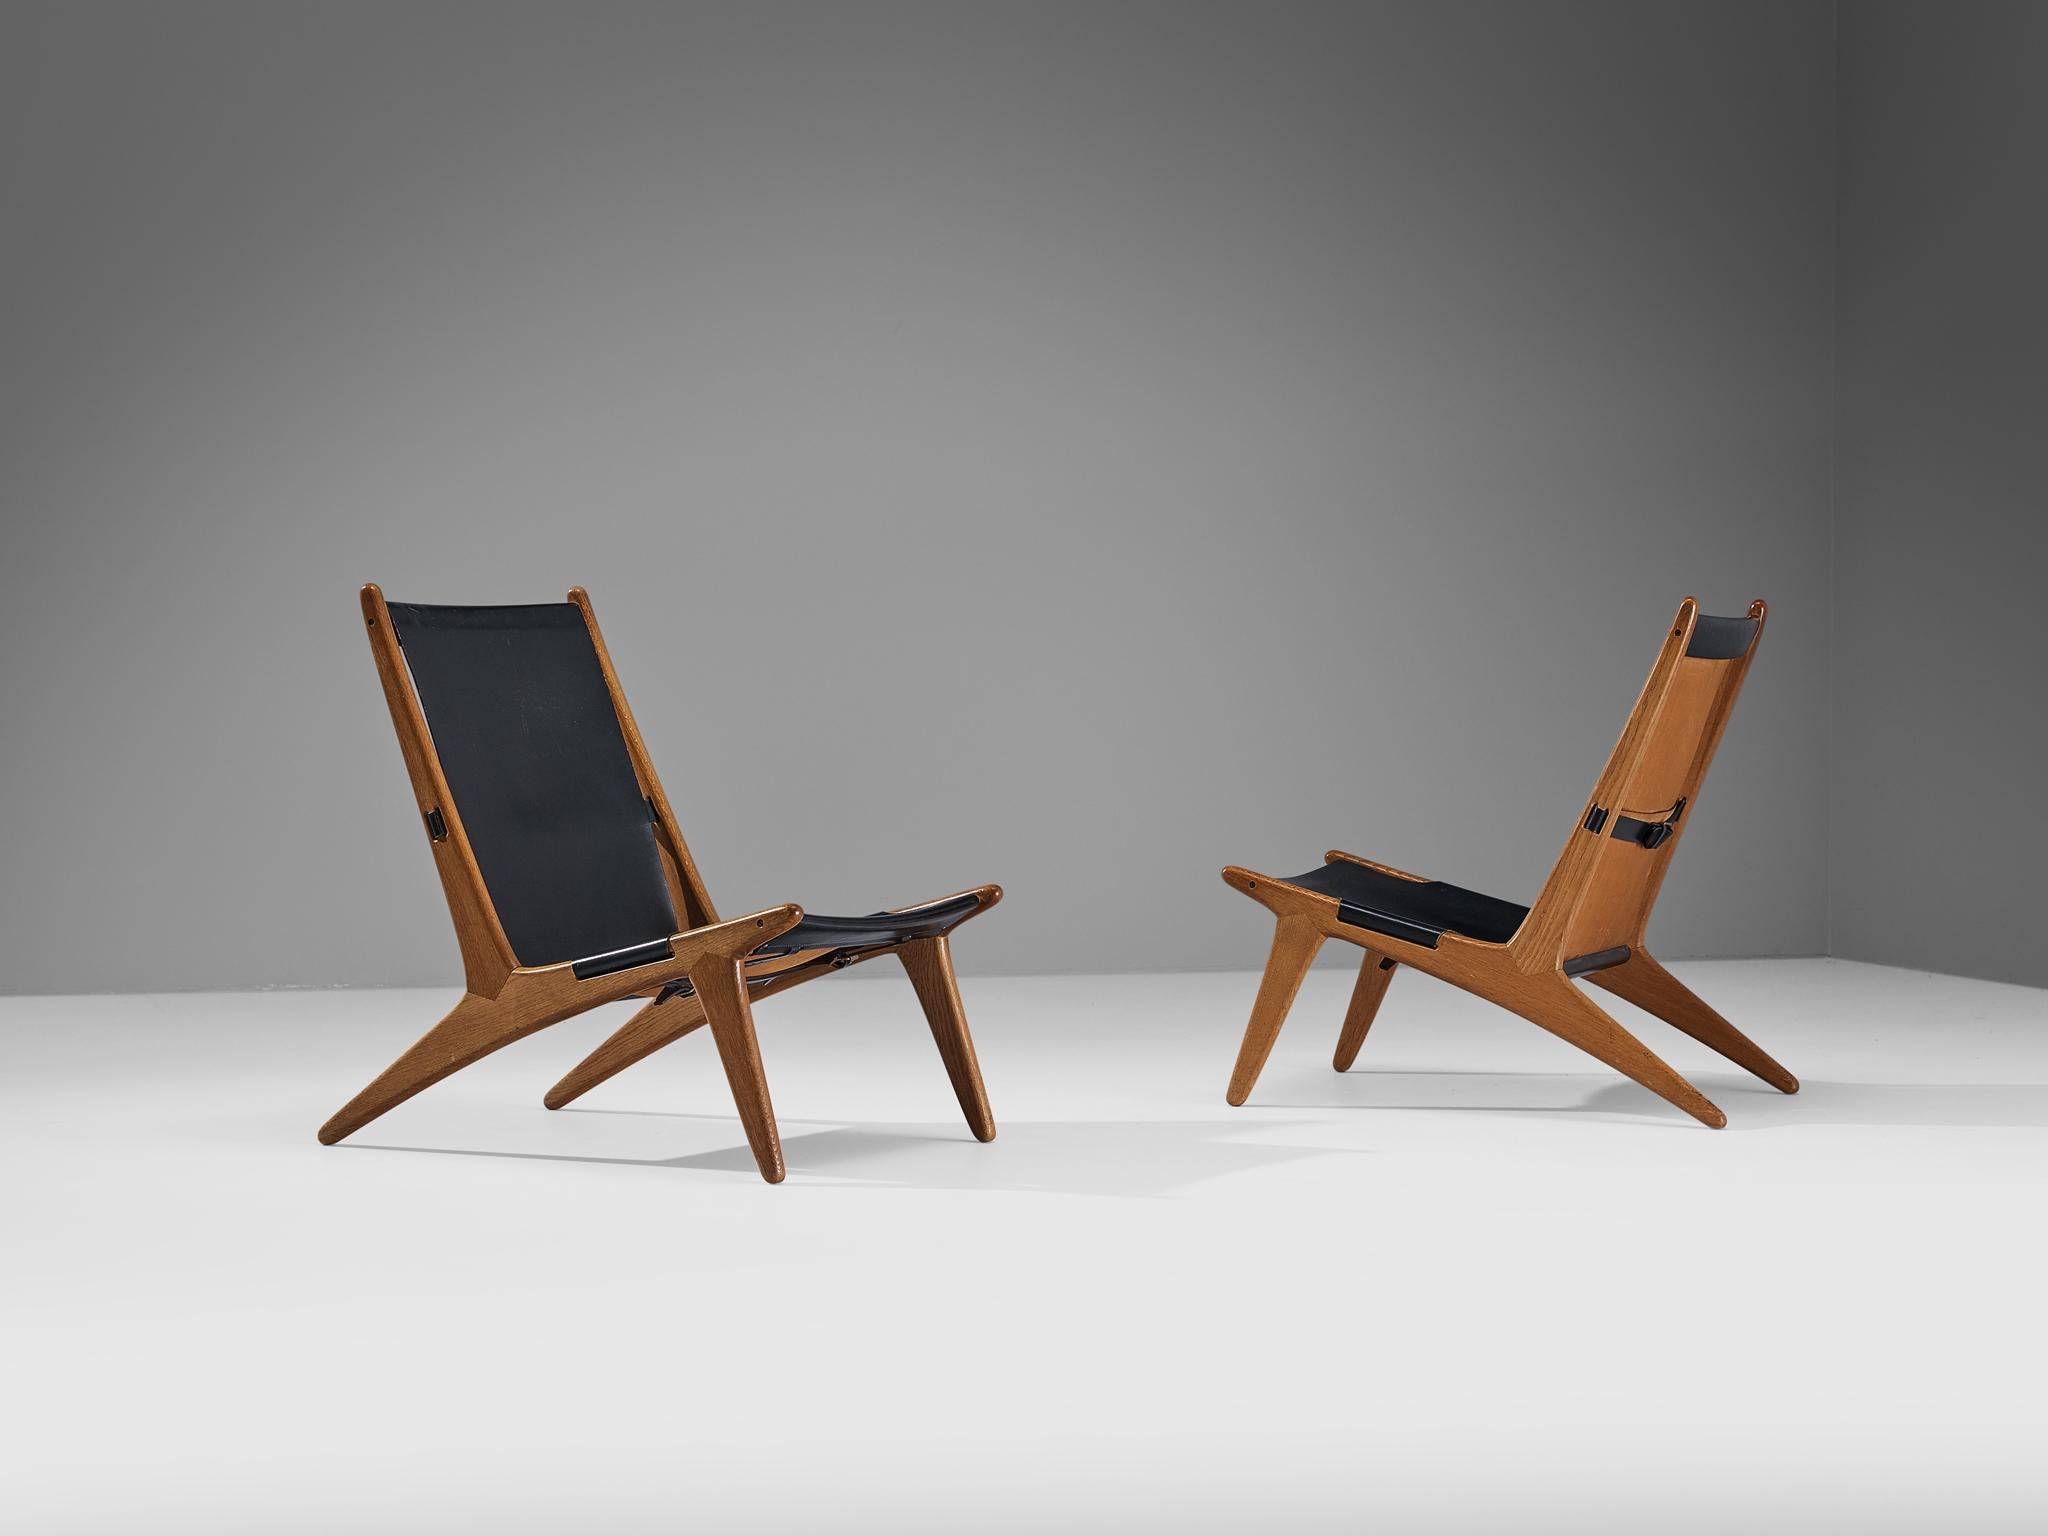 Uno & Östen Kristiansson pour Luxus, paire de chaises de chasse, modèle '204', cuir, chêne, Suède, 1954

Chaises de chasse suédoises conçues par Uno & Östen Kristiansson dans les années cinquante. Ce design unique a une apparence très forte et